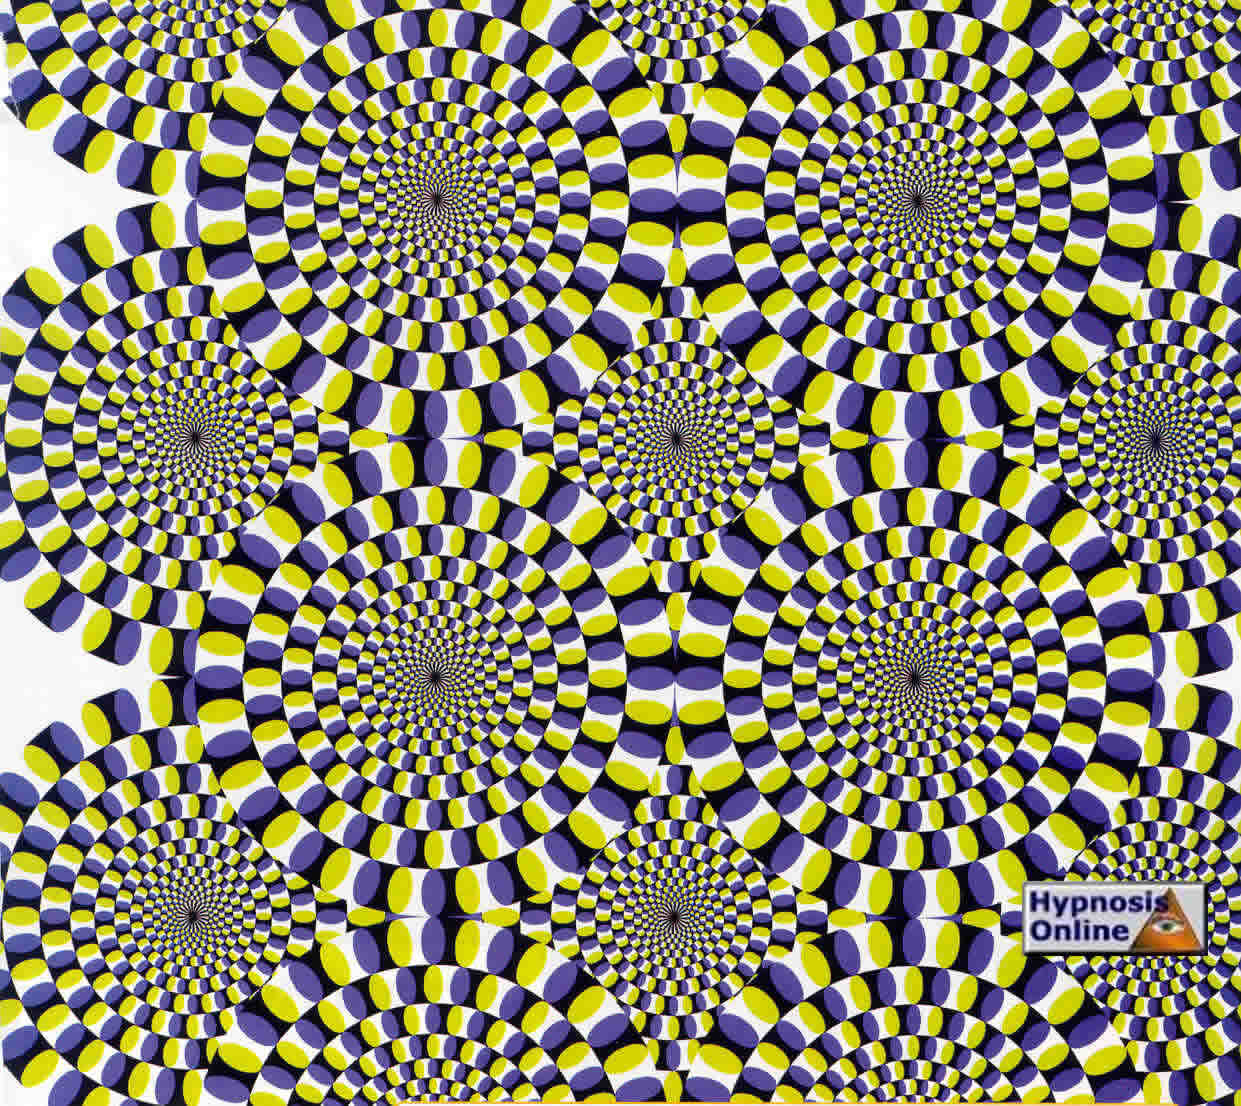 Hypnotic Spiral Wallpaper Hypnosis Online